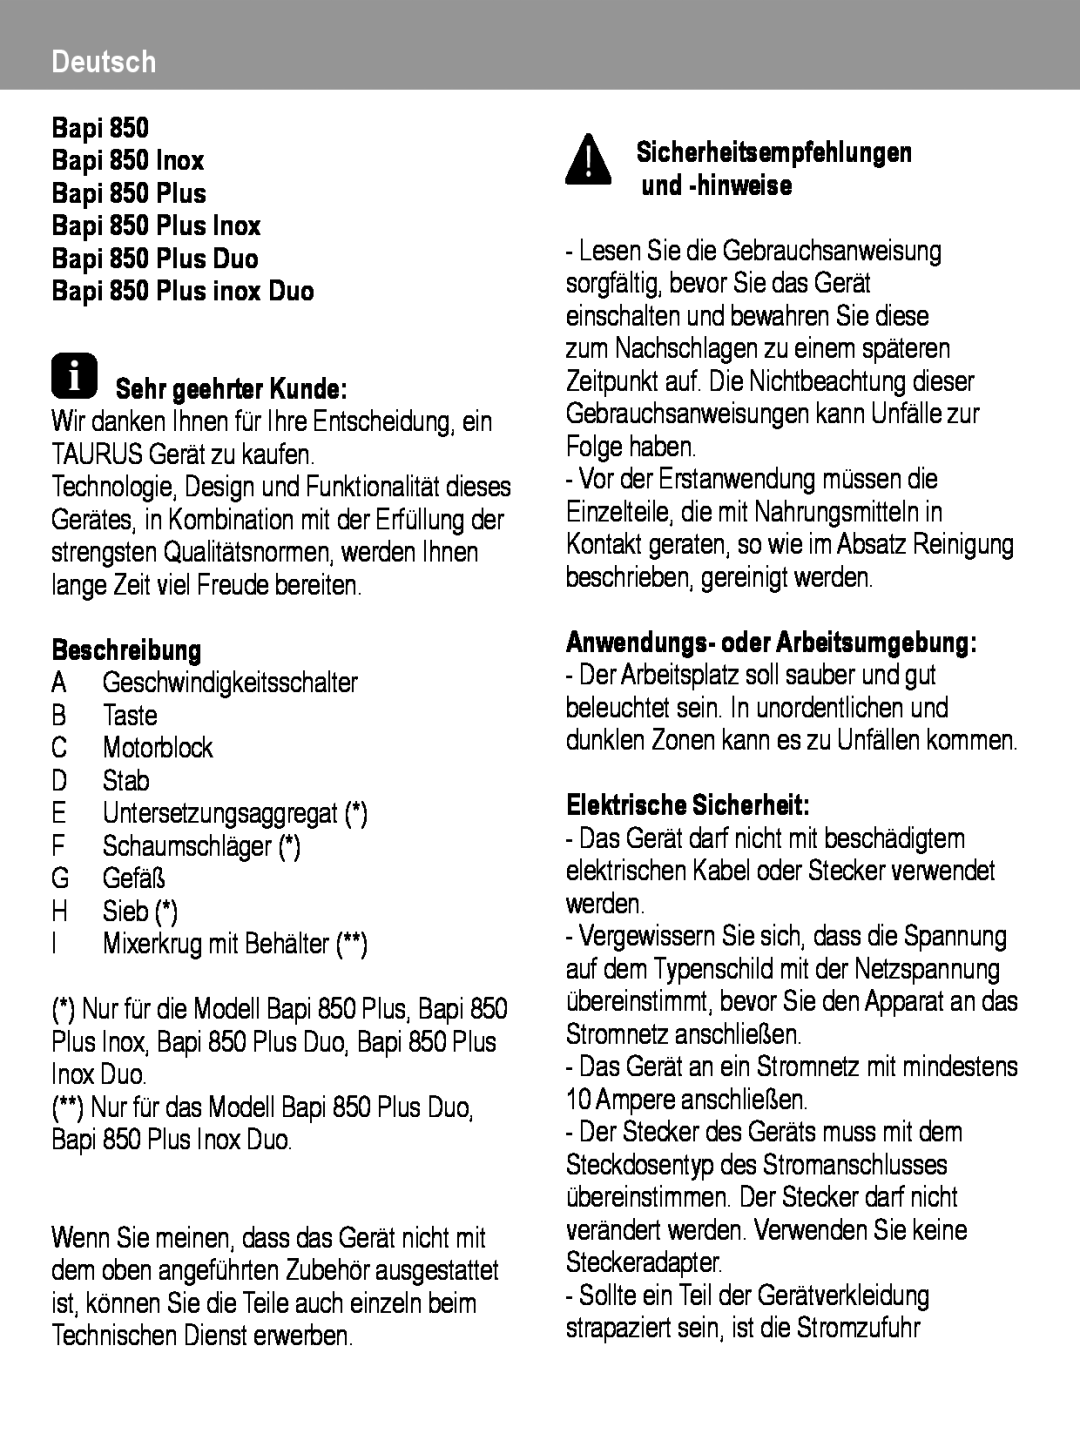 Taurus Group manual Deutsch, Bapi 850 Plus inox Duo Sehr geehrter Kunde, Beschreibung, I Mixerkrug mit Behälter 